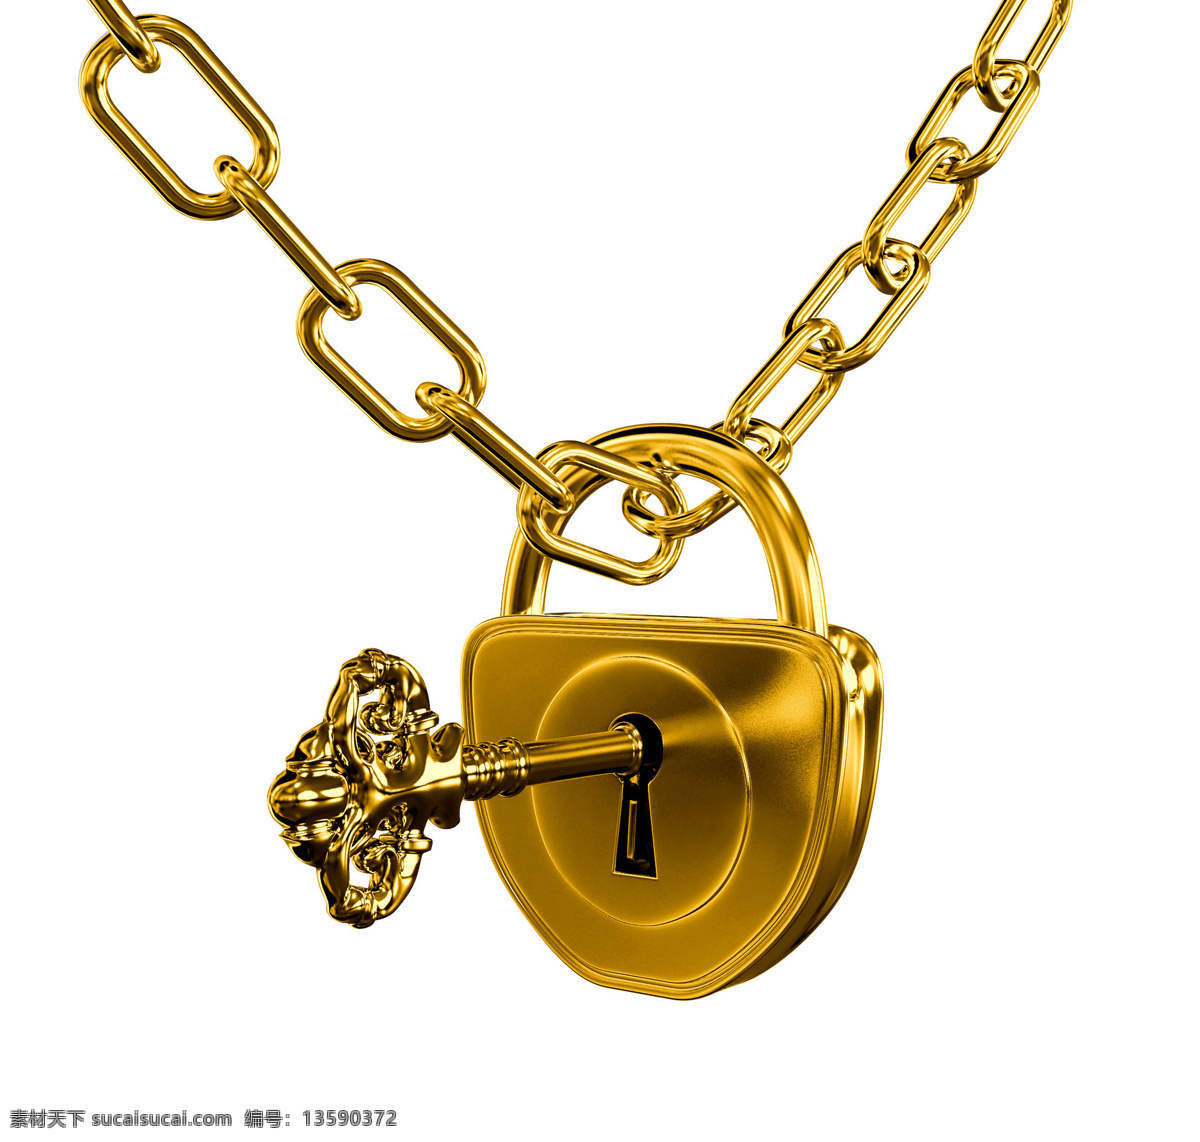 金钥匙 锁 黄金制品 金属 开锁 金链子 财富 高清图片 珠宝服饰 生活百科